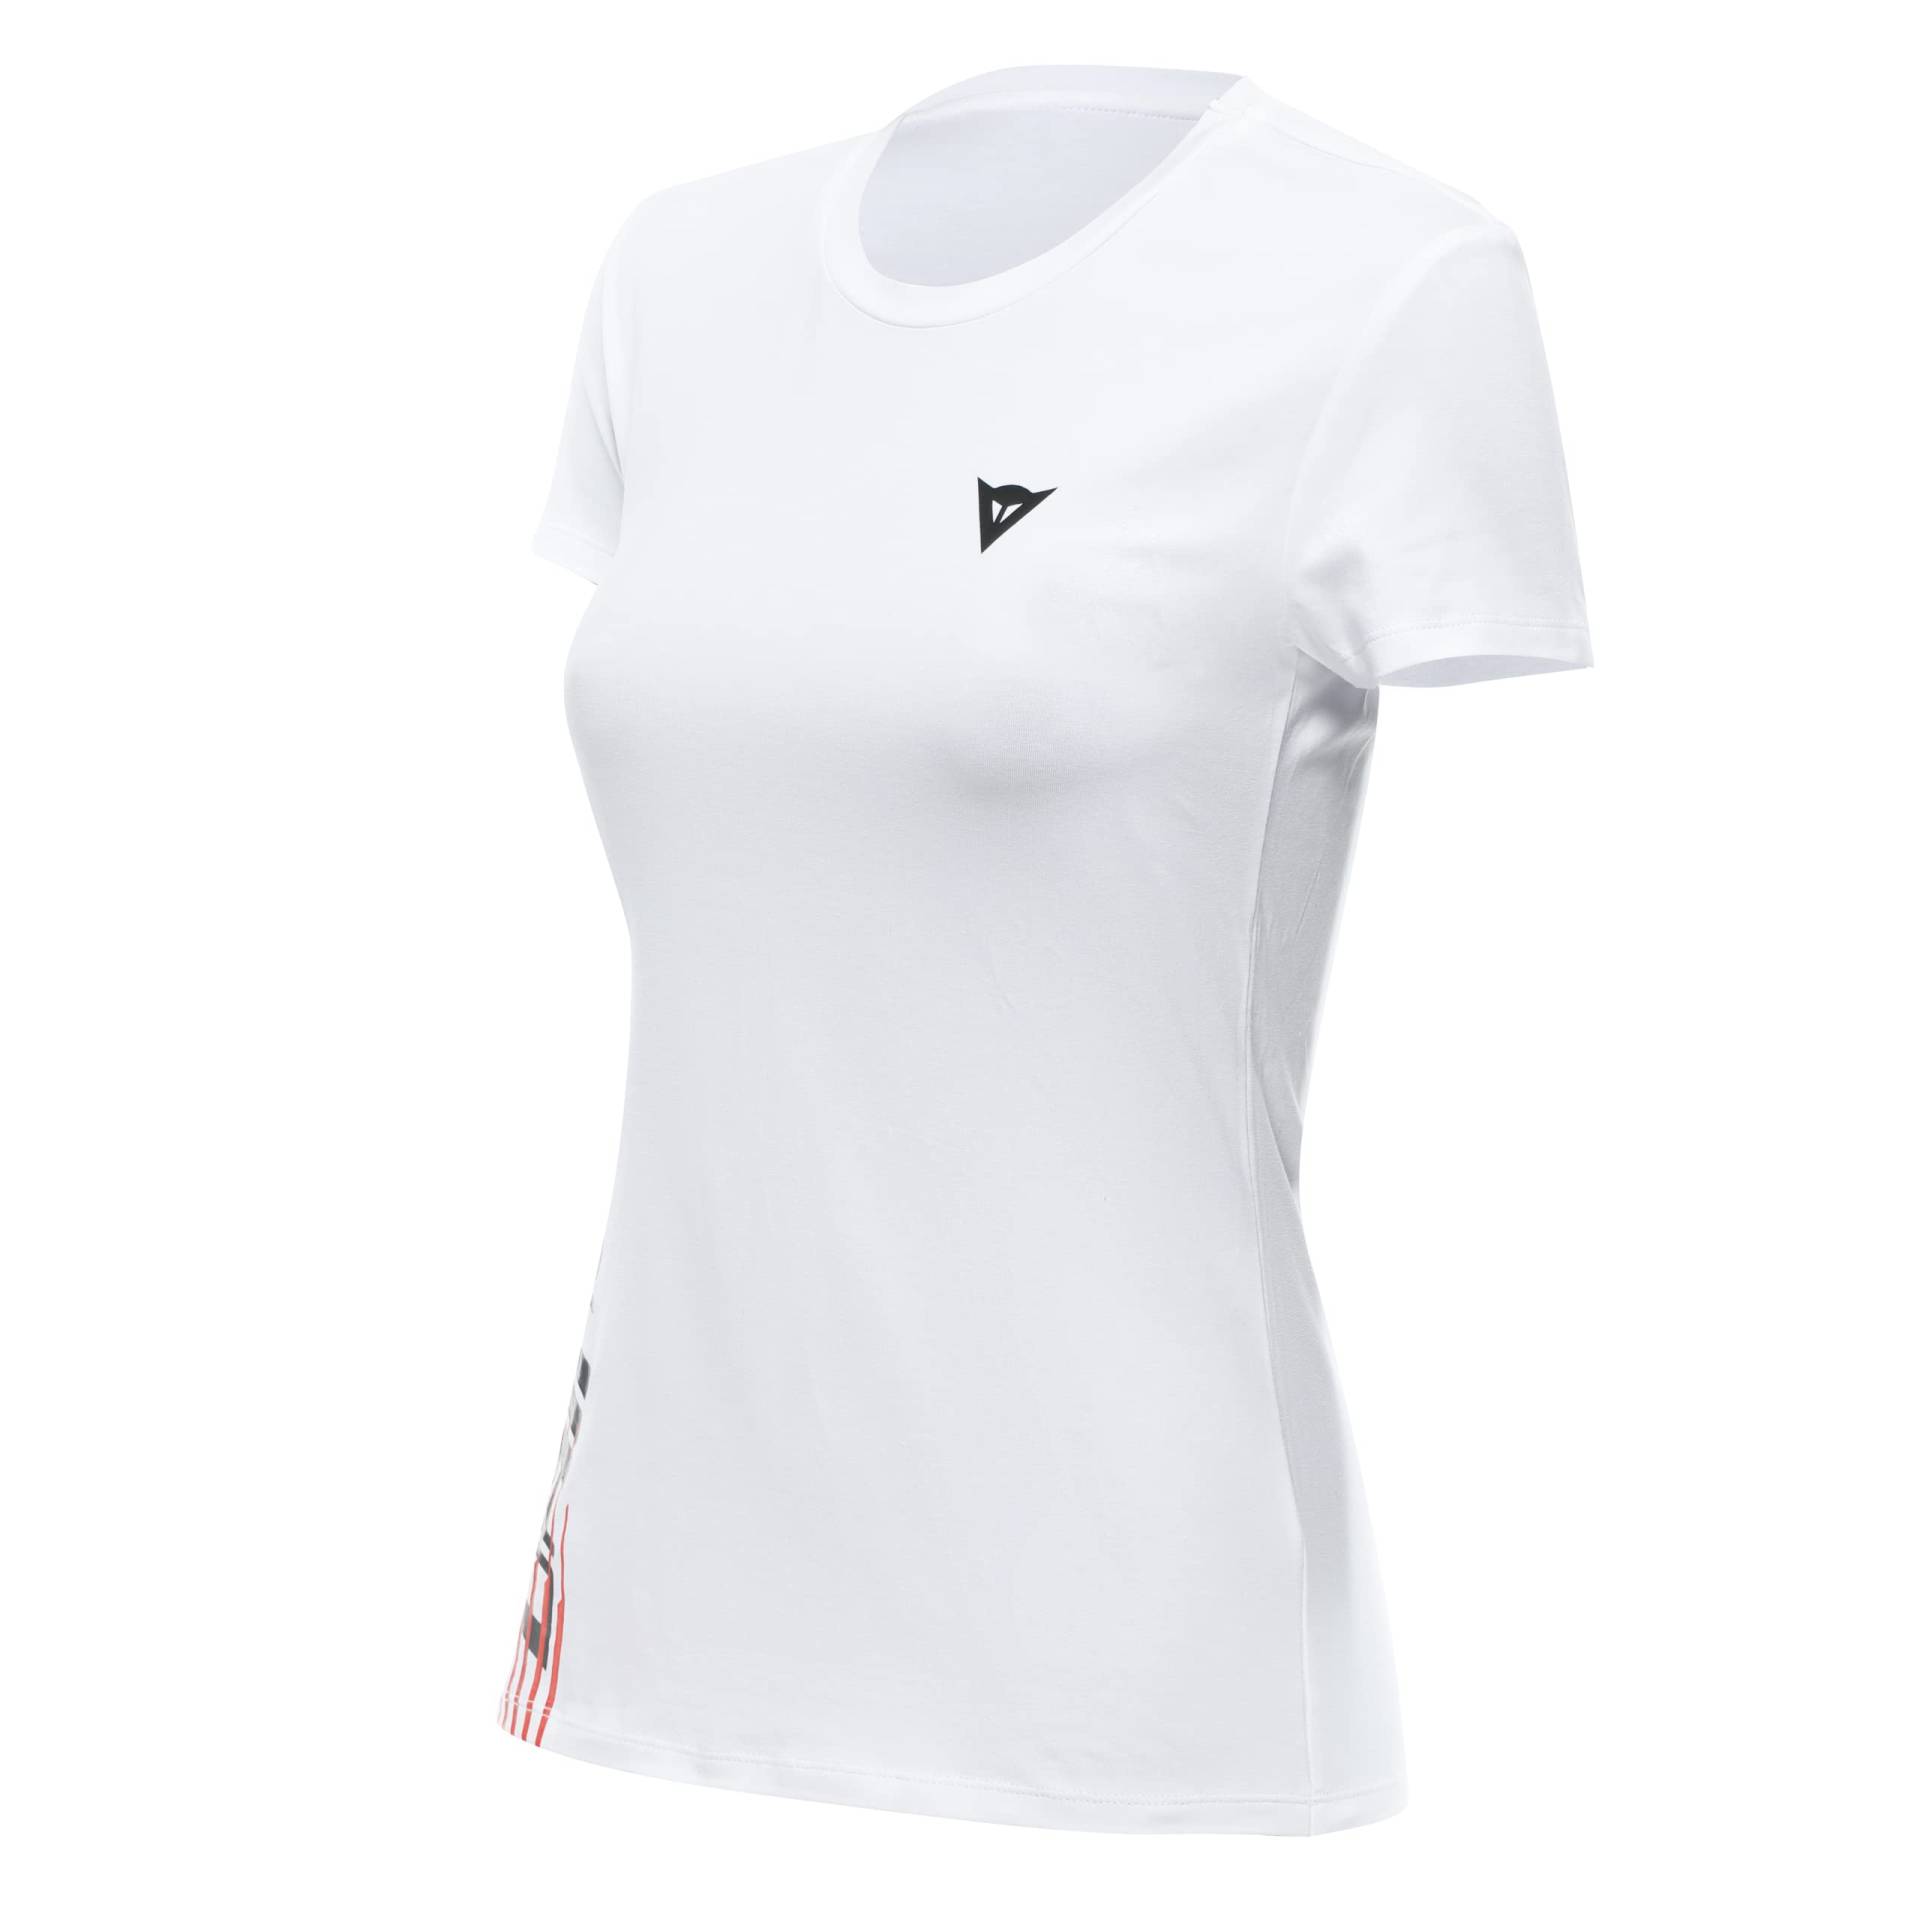 Dainese T-Shirt Logo Lady, T-Shirt Kurzarm 100% Baumwolle, Damen, Weiß/Schwarz, XXXL von Dainese